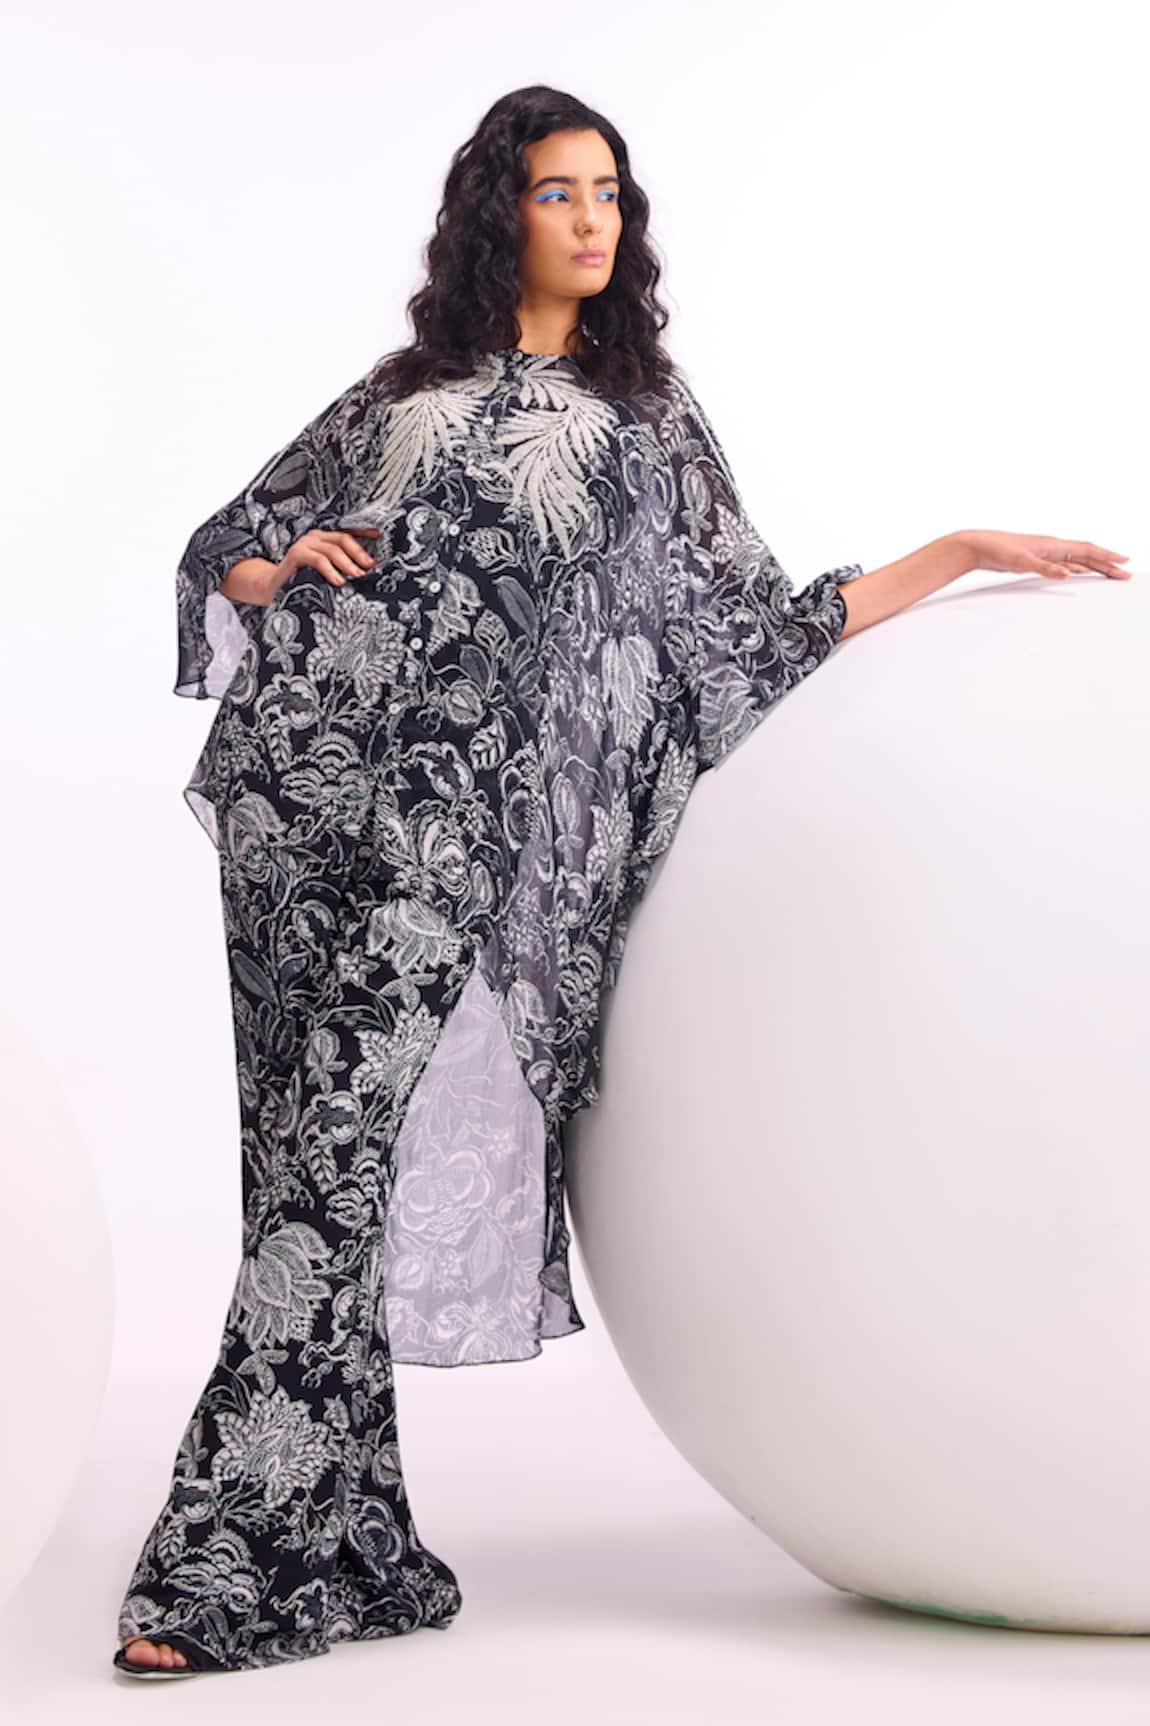 Namrata Joshipura Cerelia Floral Pattern Tunic & Pant Co-ord Set